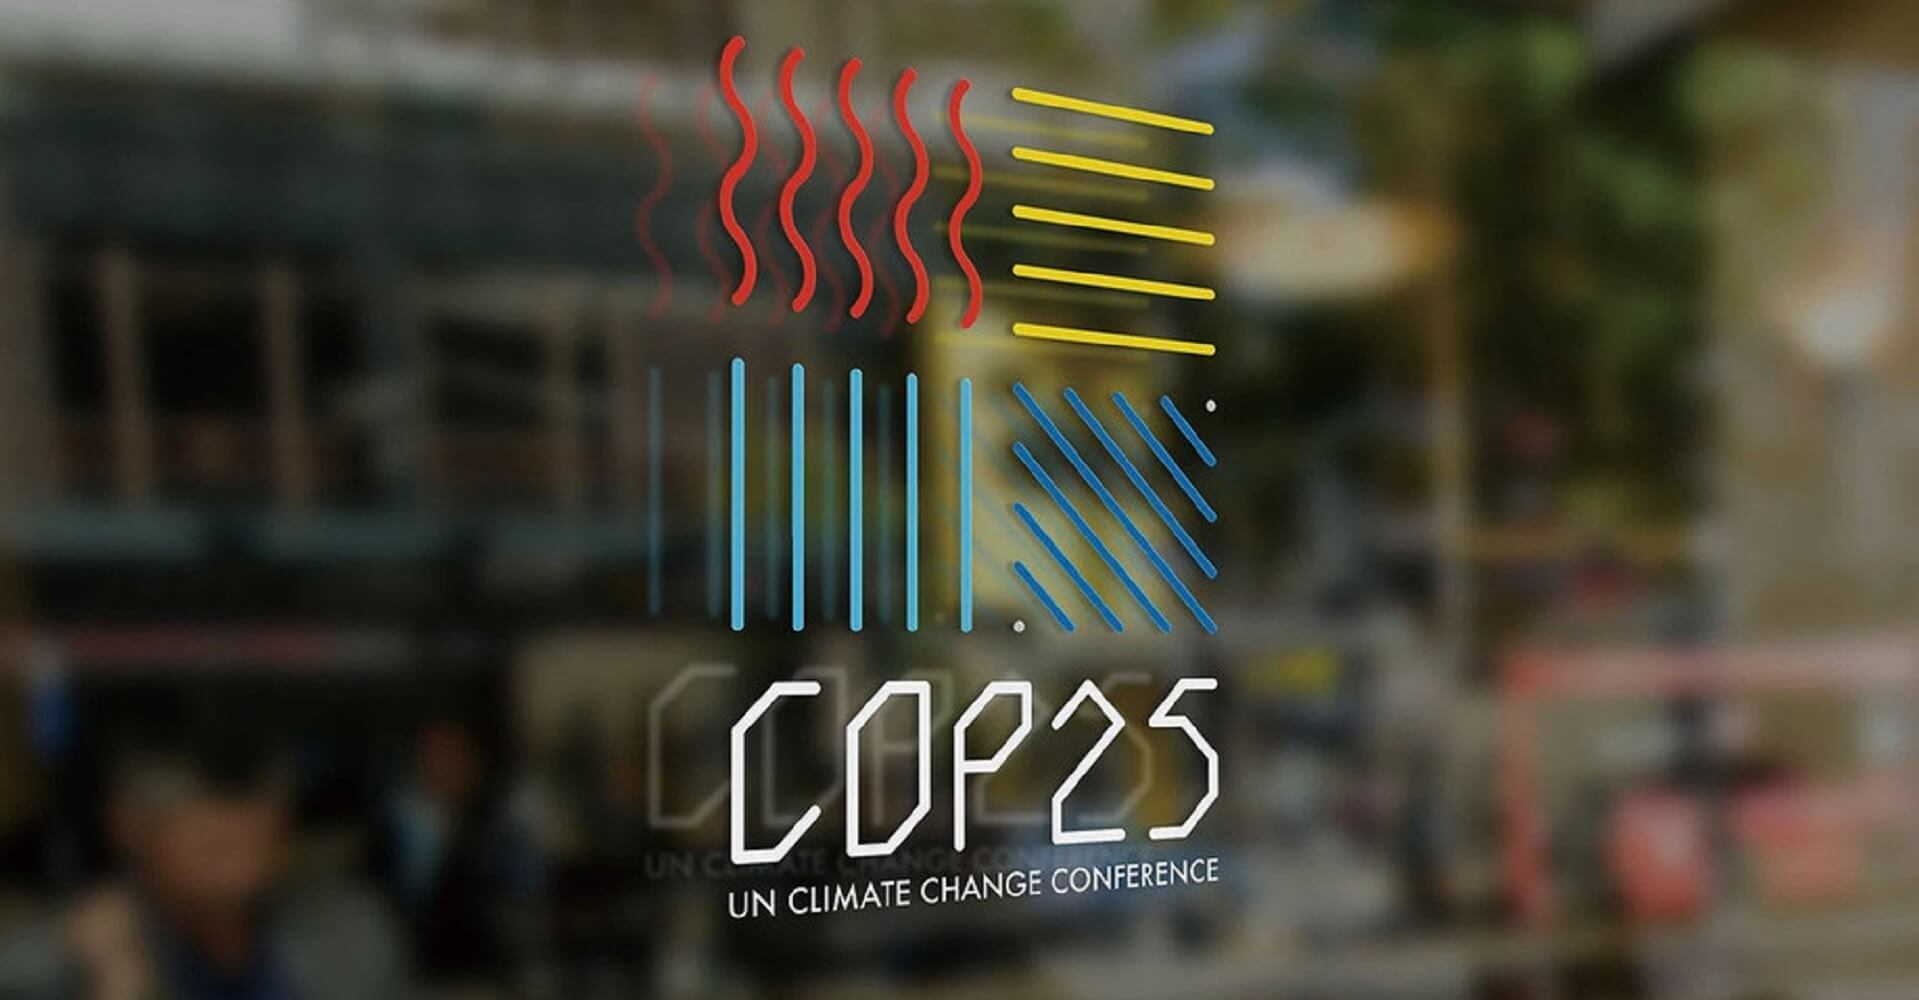  CHILE SERÁ SEDE DE LA COP25